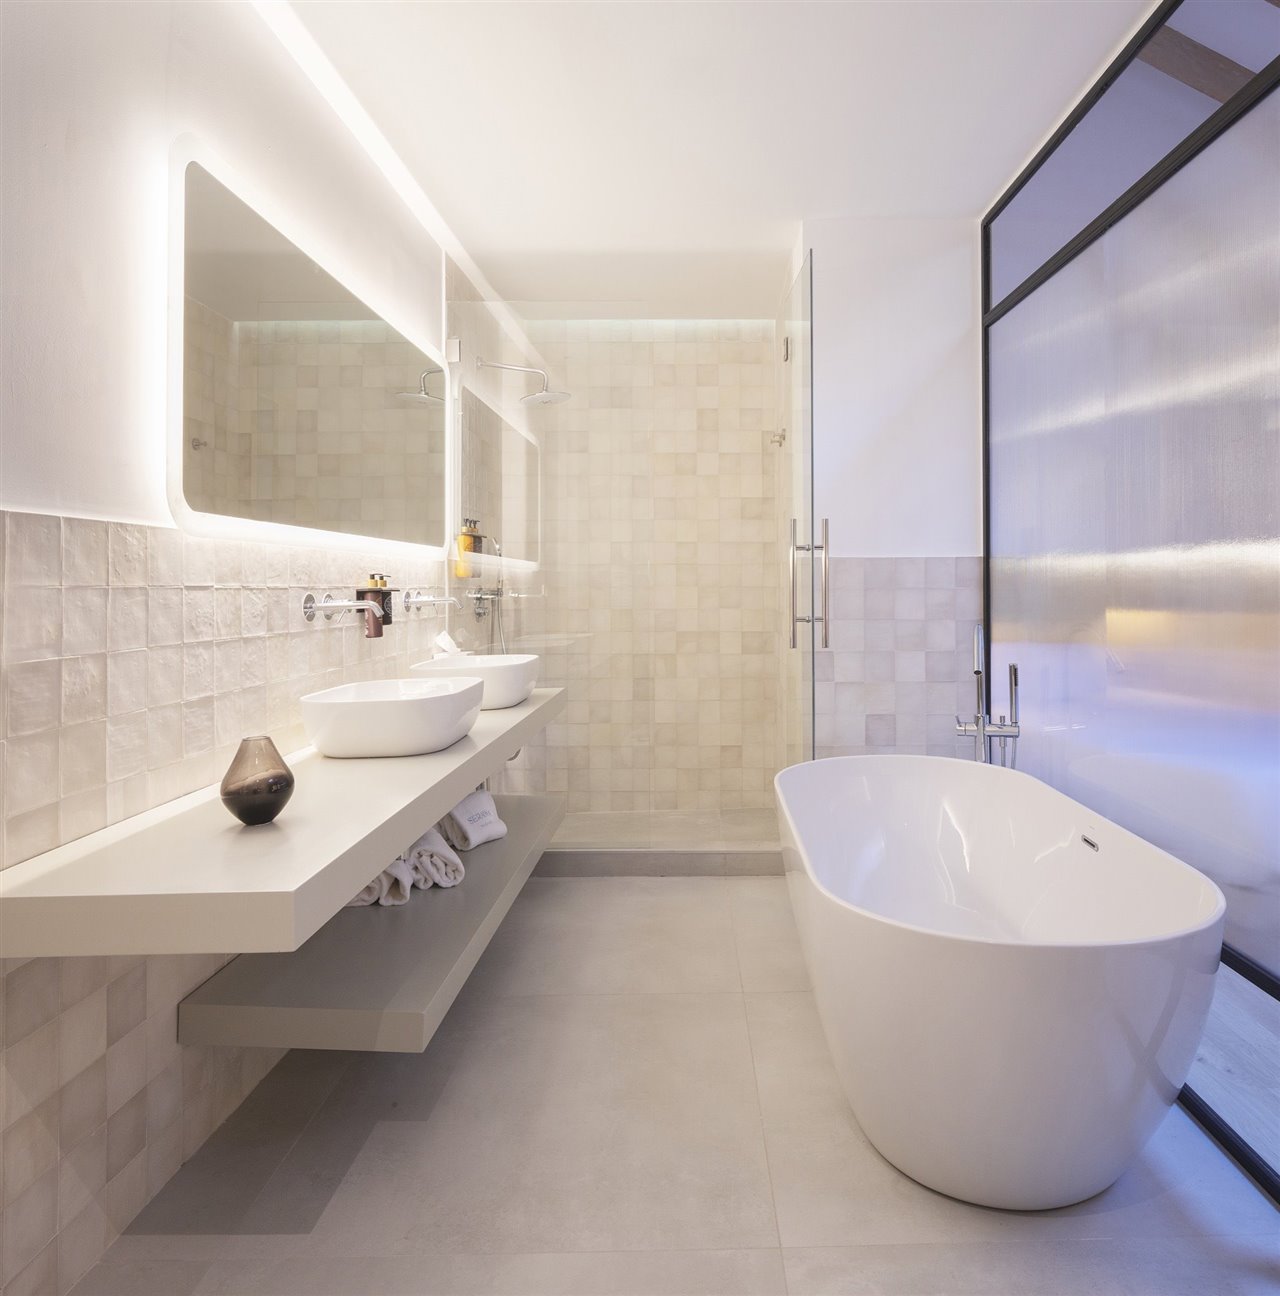 Los baños aseguran condiciones inmejorables de eficiencia energética y máximo confort.